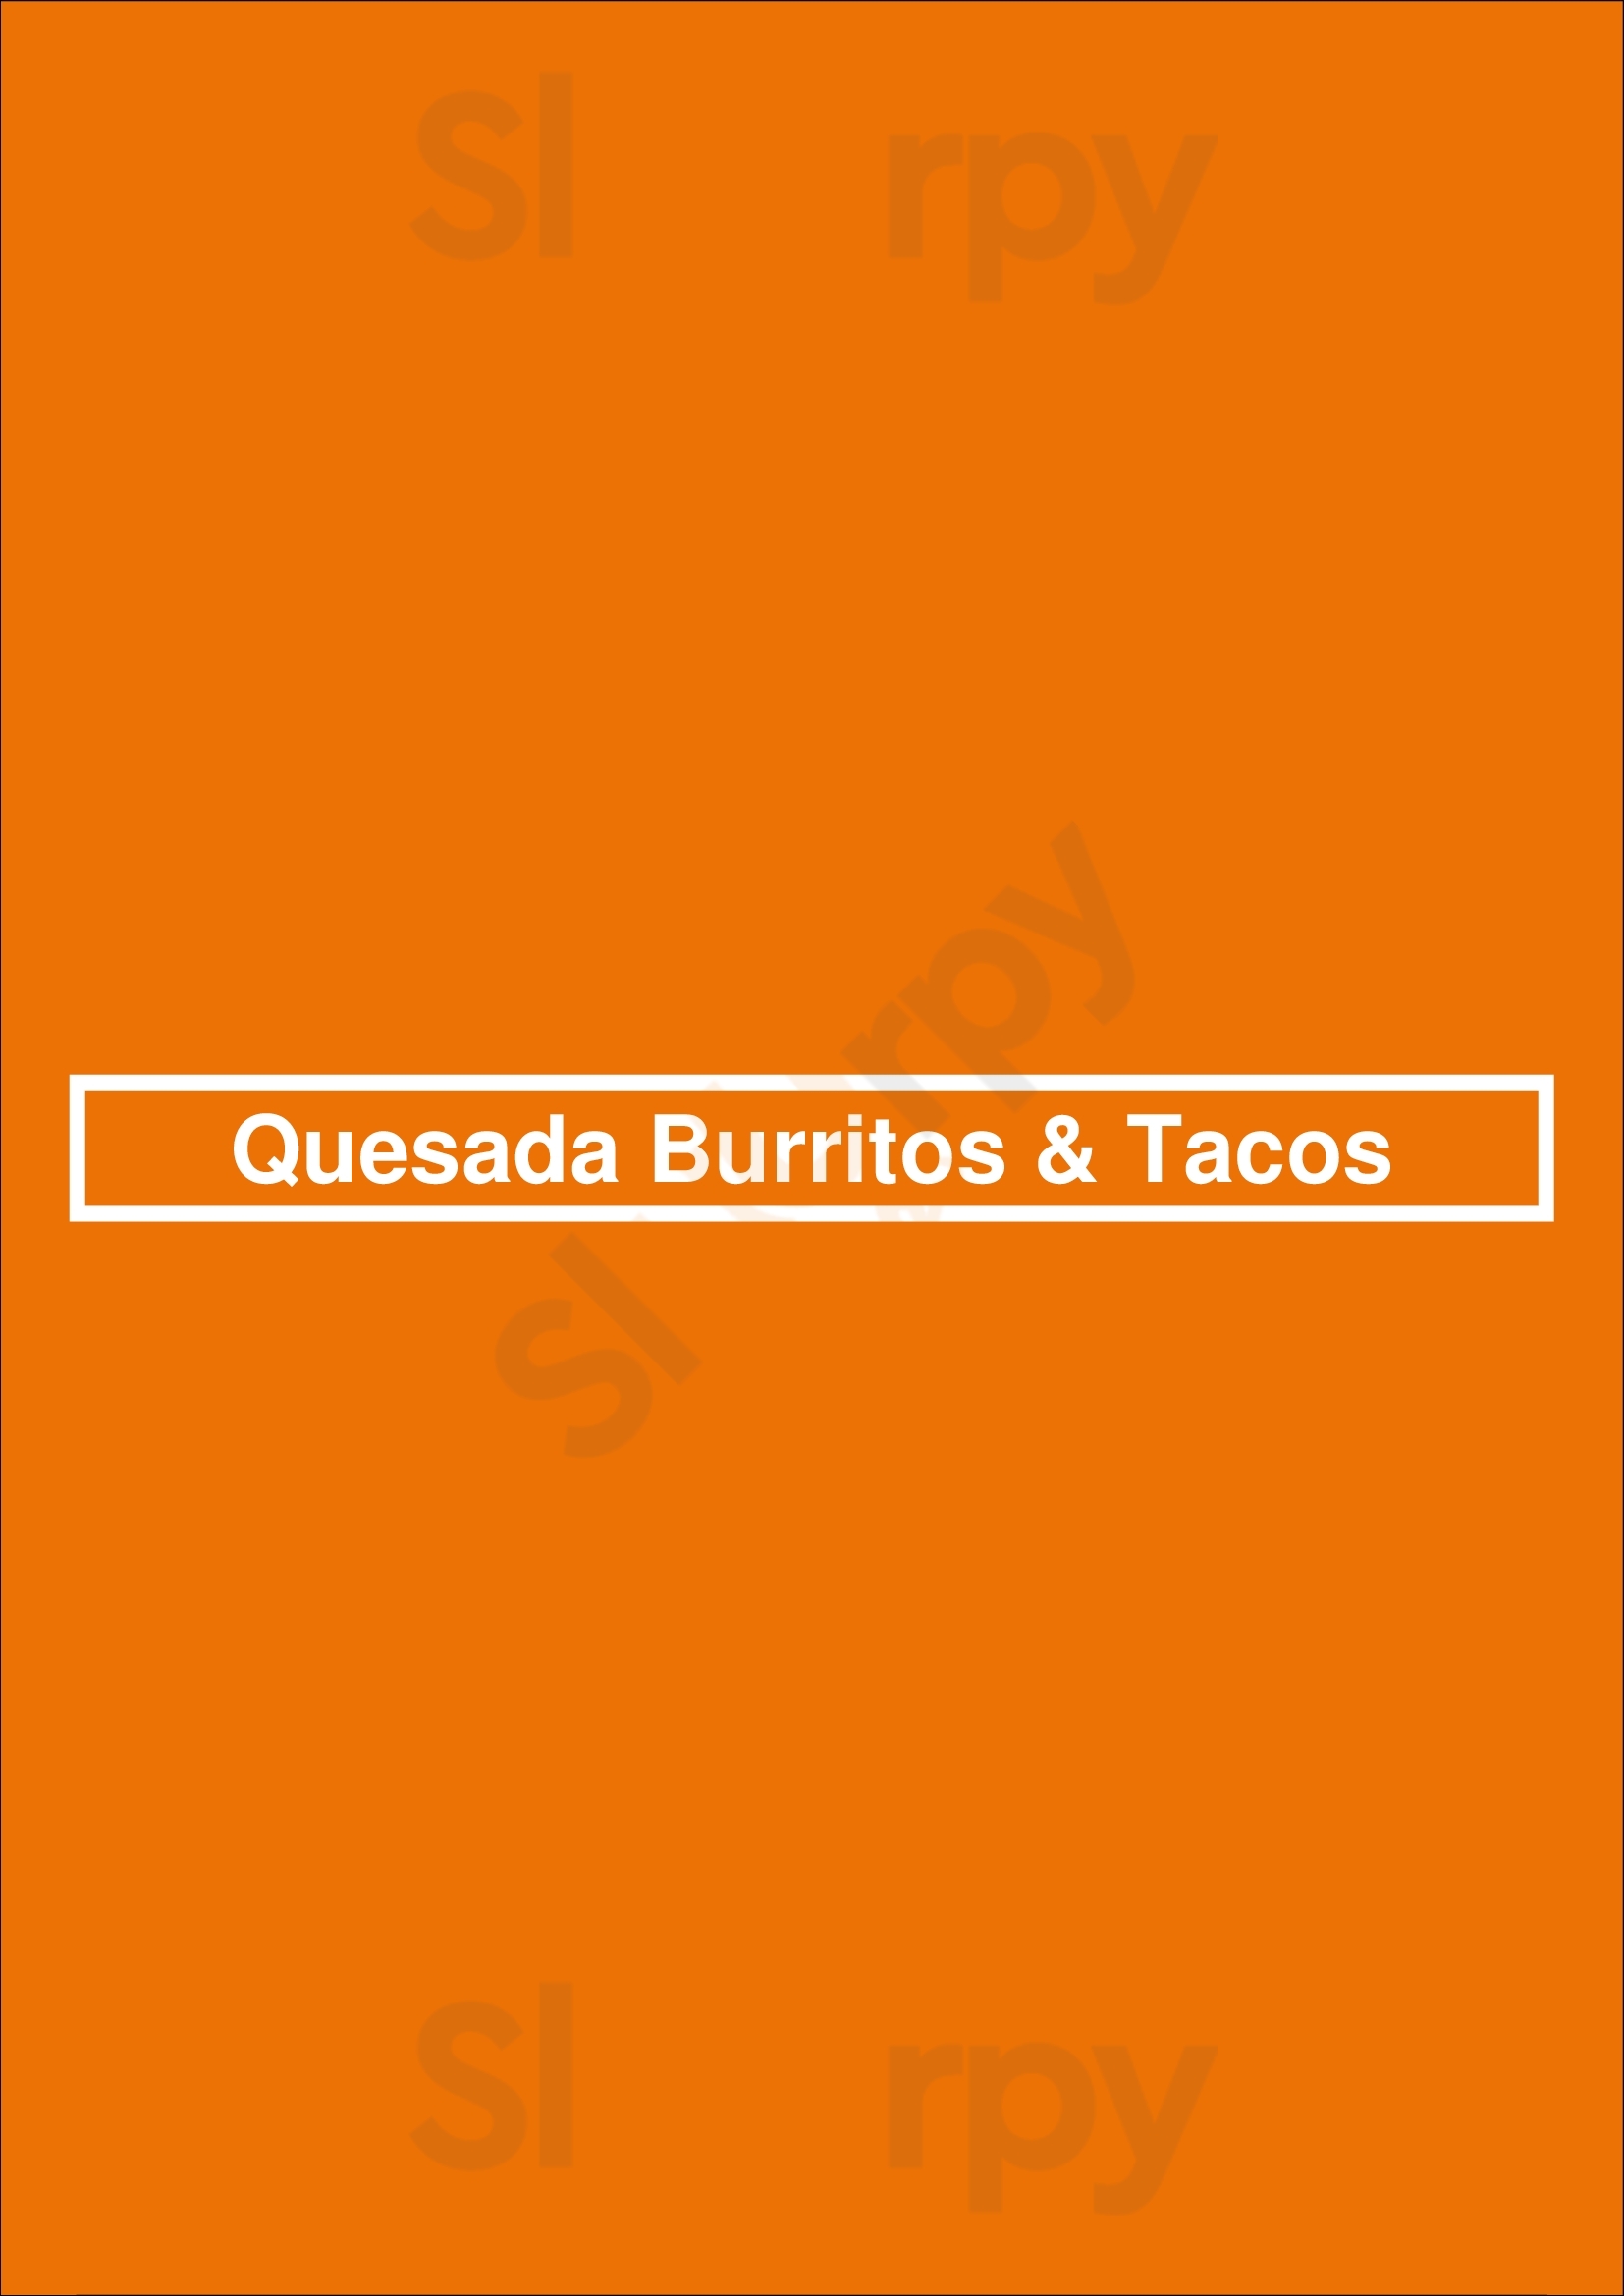 Quesada Burritos & Tacos Calgary Menu - 1